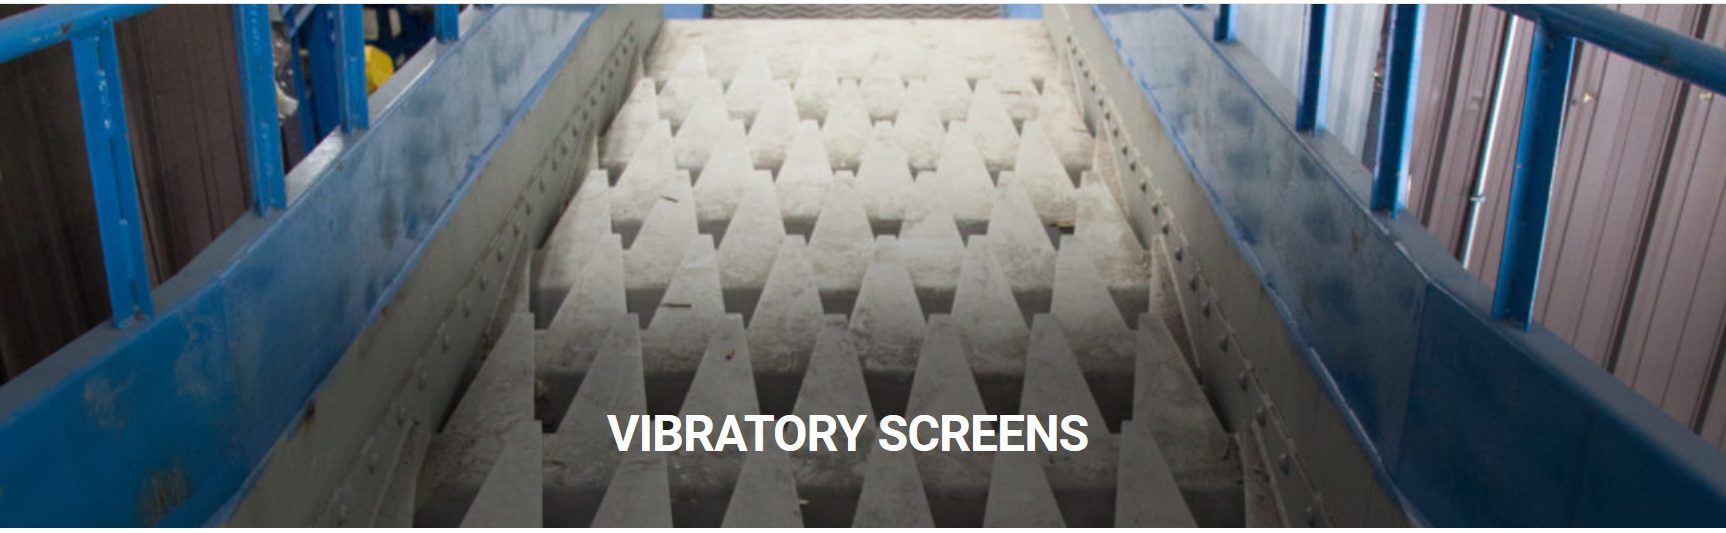 vibratory screens